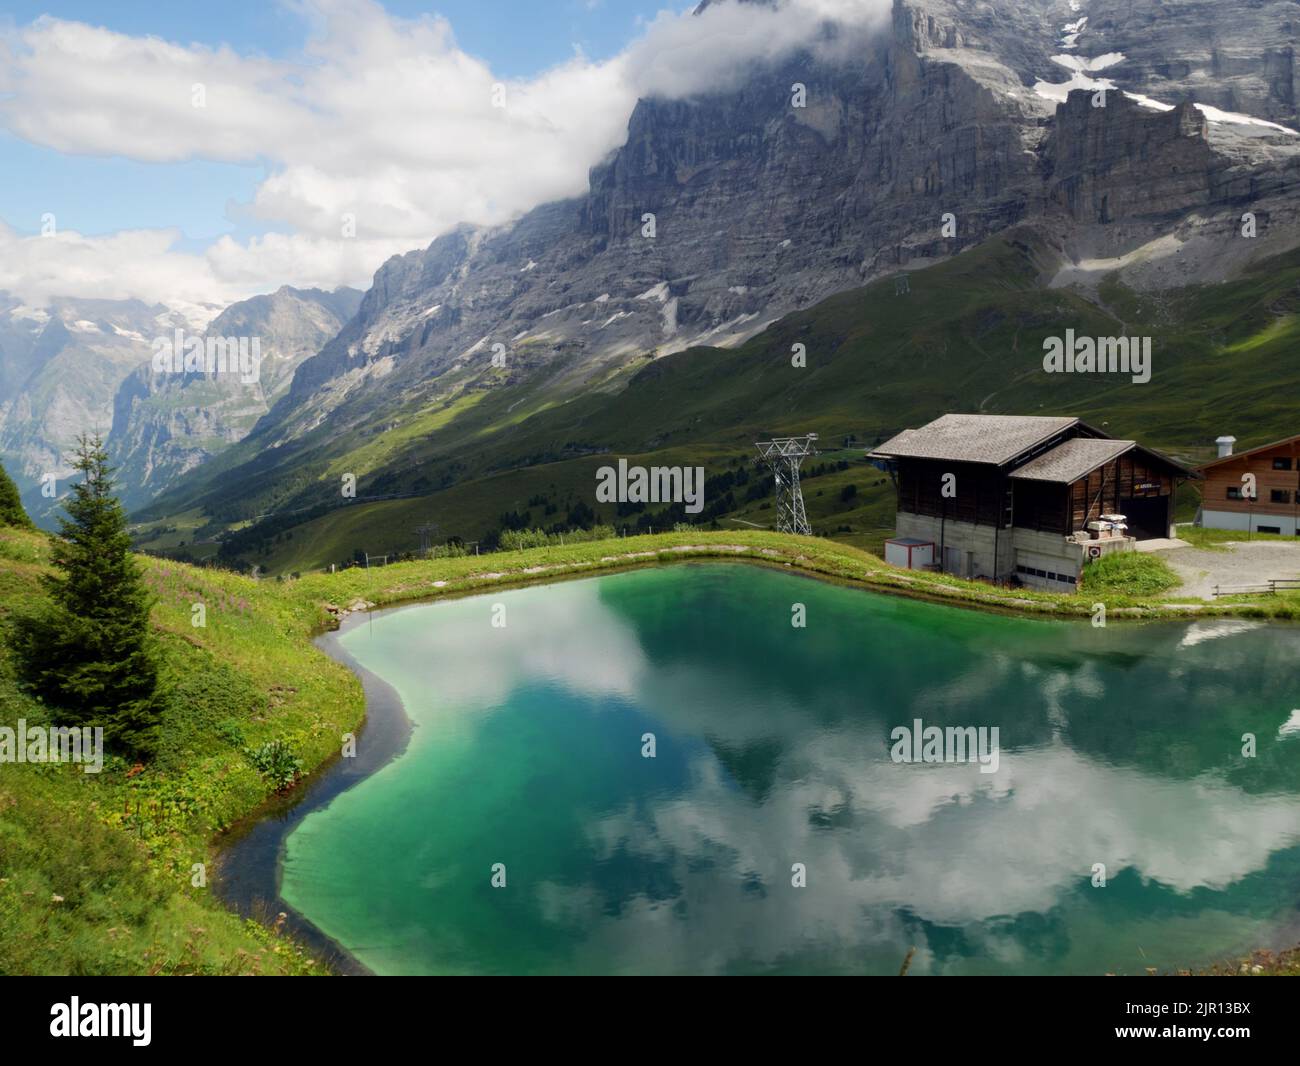 A reservoir beneath the Eiger north face near Kleine Scheidegg, Bernese Oberland, Switzerland. Stock Photo